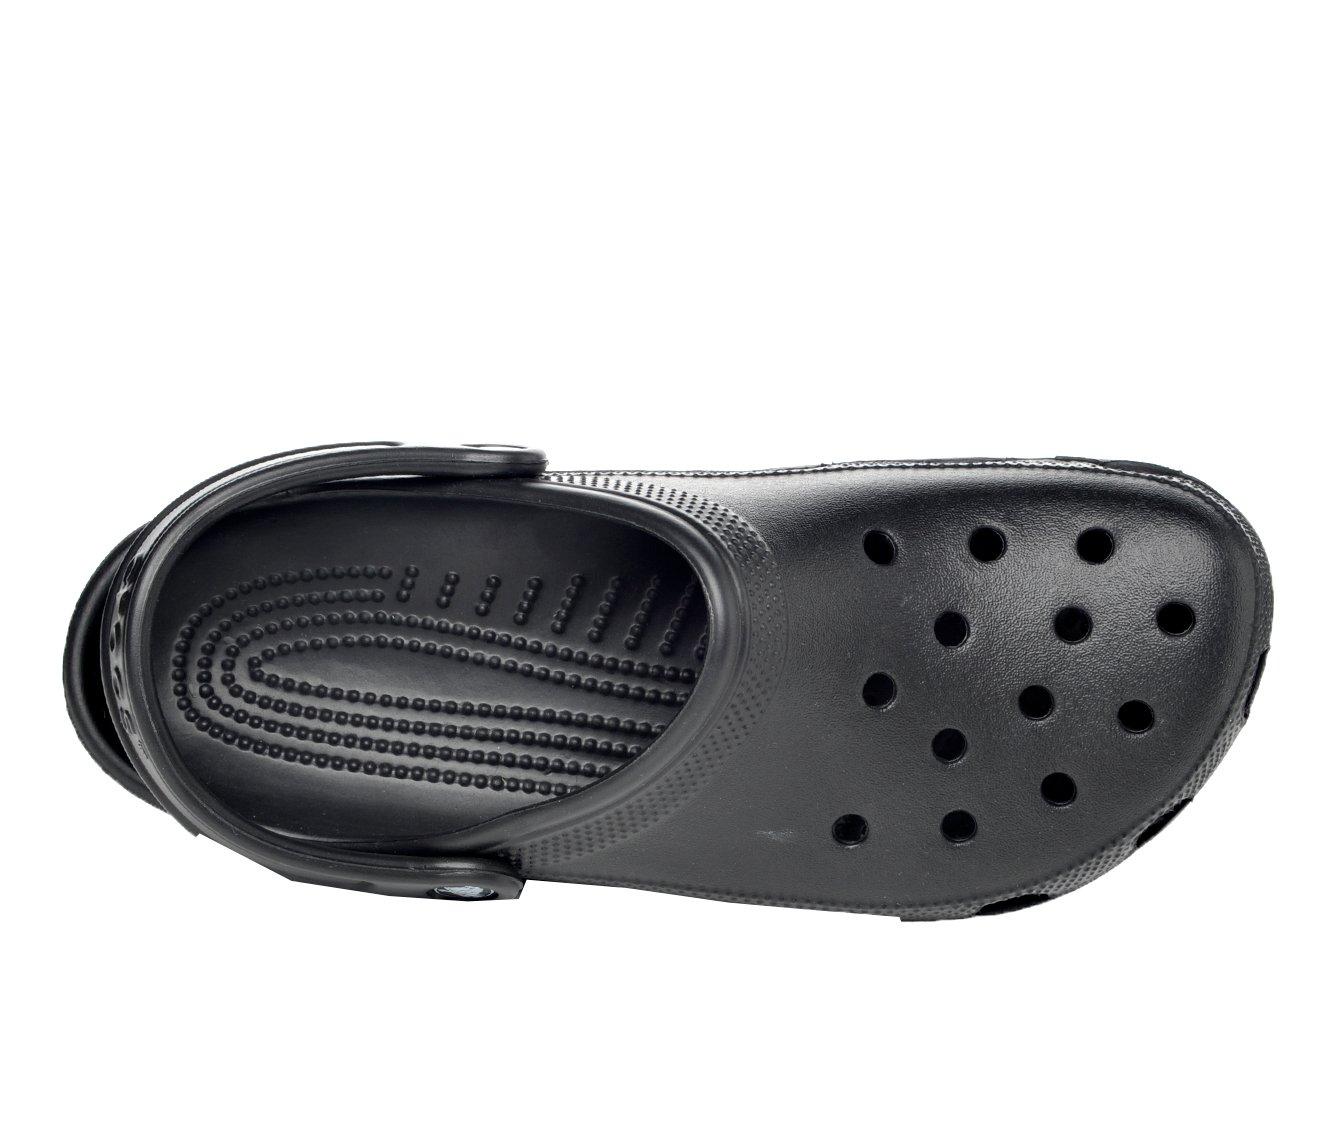 Adults' Crocs Clogs Shoe